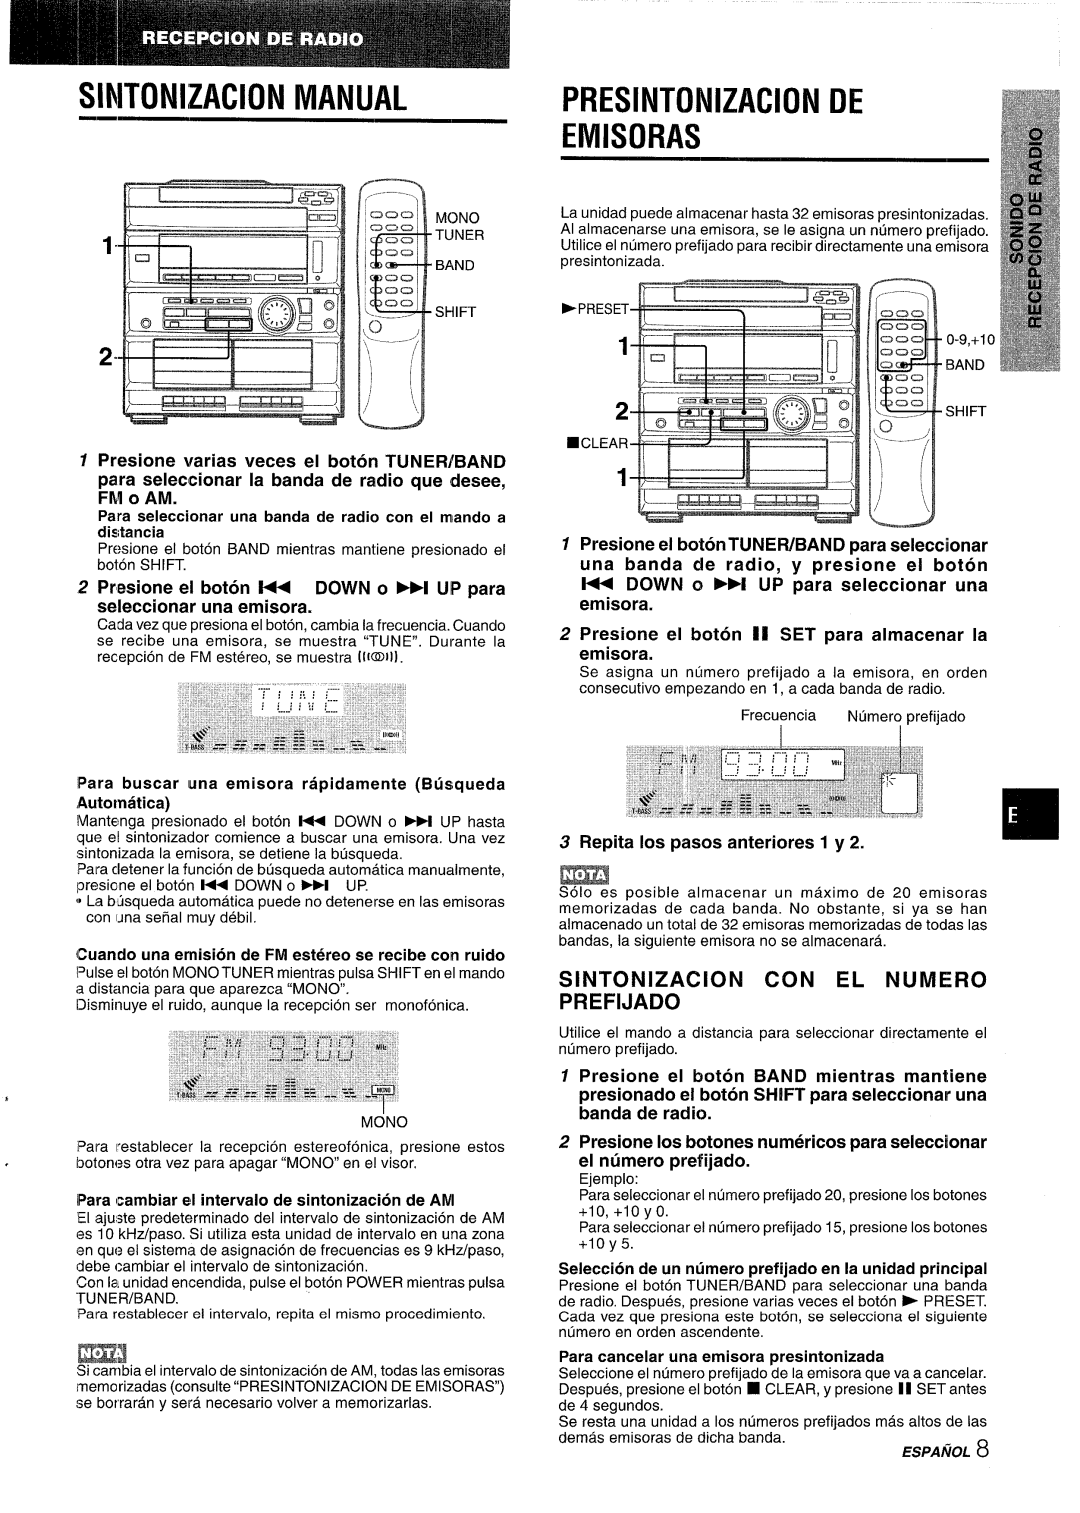 Sony CX-ZR525 manual Sintonizacion Manual, Presintonizacion De Emisoras, Sintonizacion Con El Numero Prefijado 